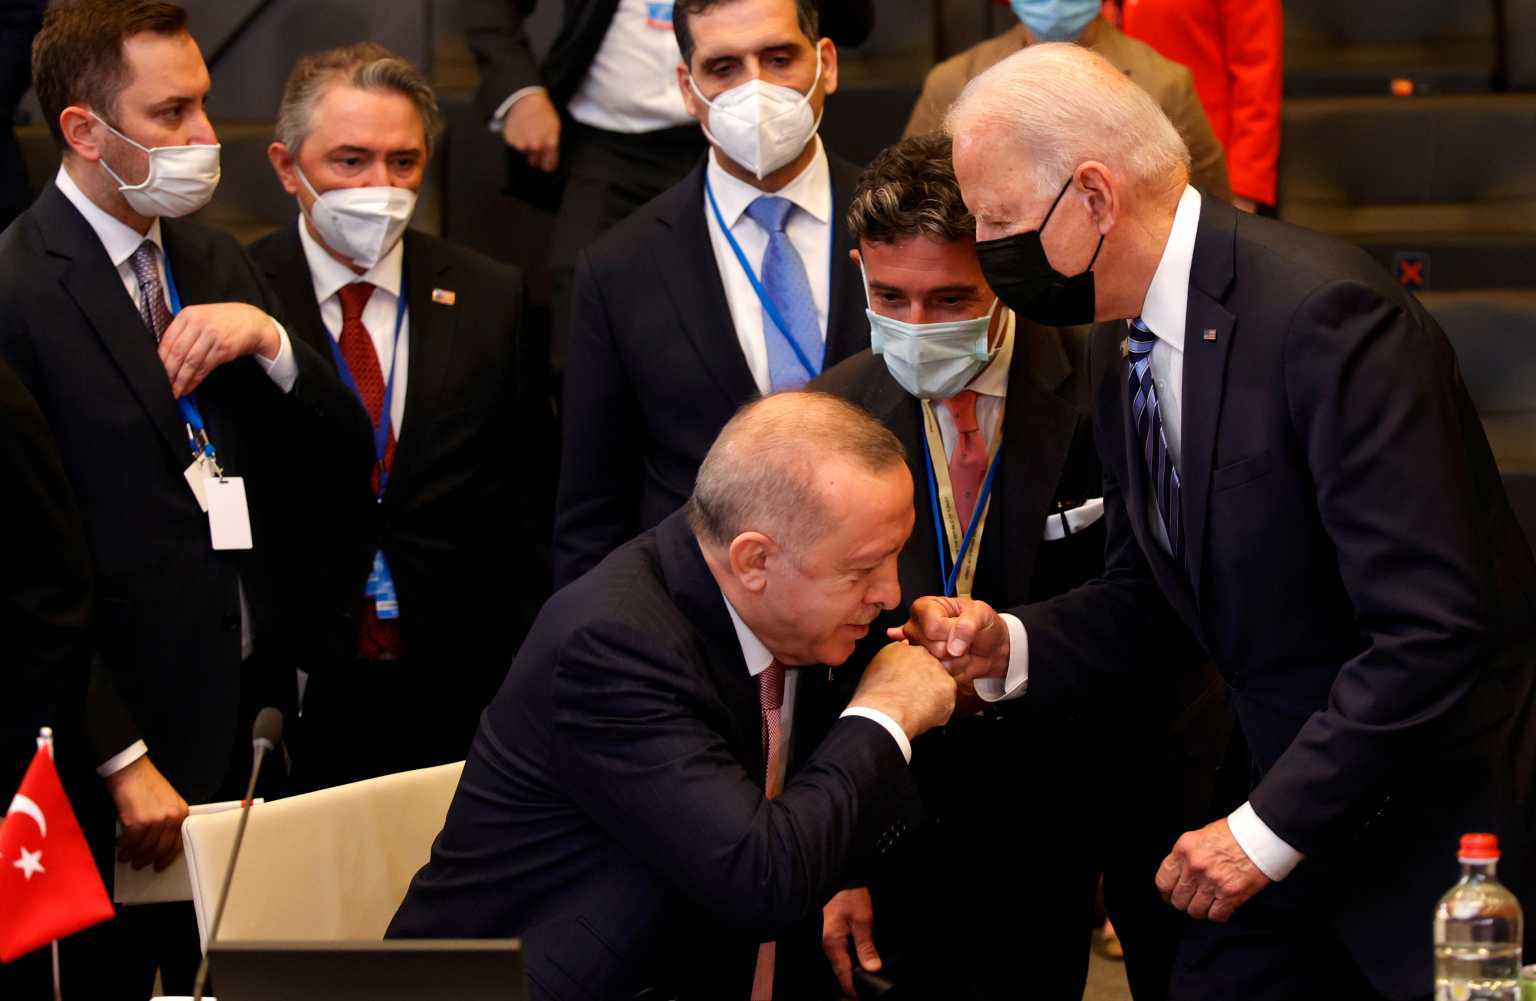 Σύνοδος ΝΑΤΟ: Η φωτογραφία Ερντογάν – Μπάιντεν που κάνει χαμό στα social media